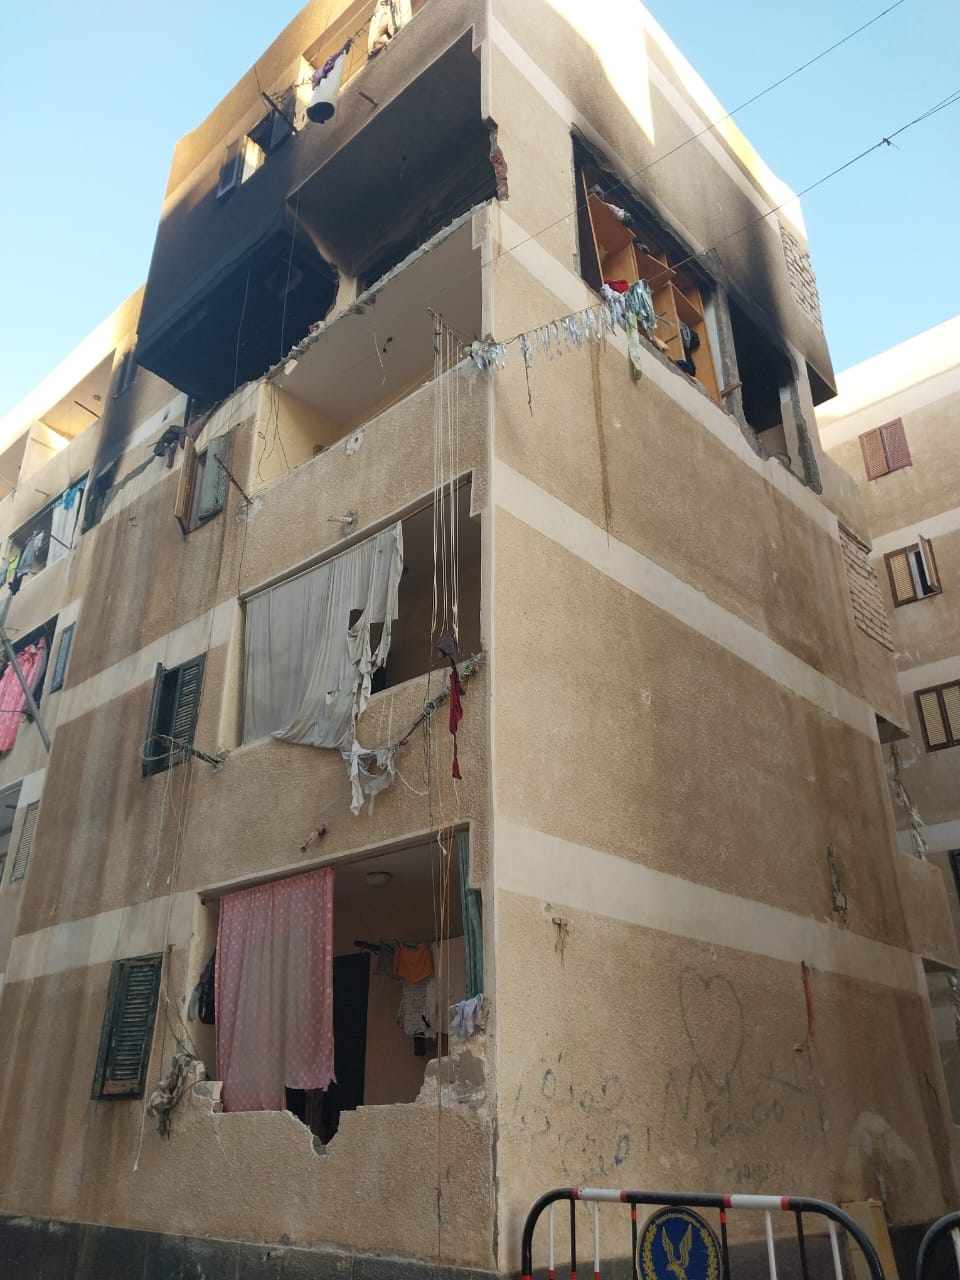 انفجار اسطوانه بتوجاز في الاسكندرية